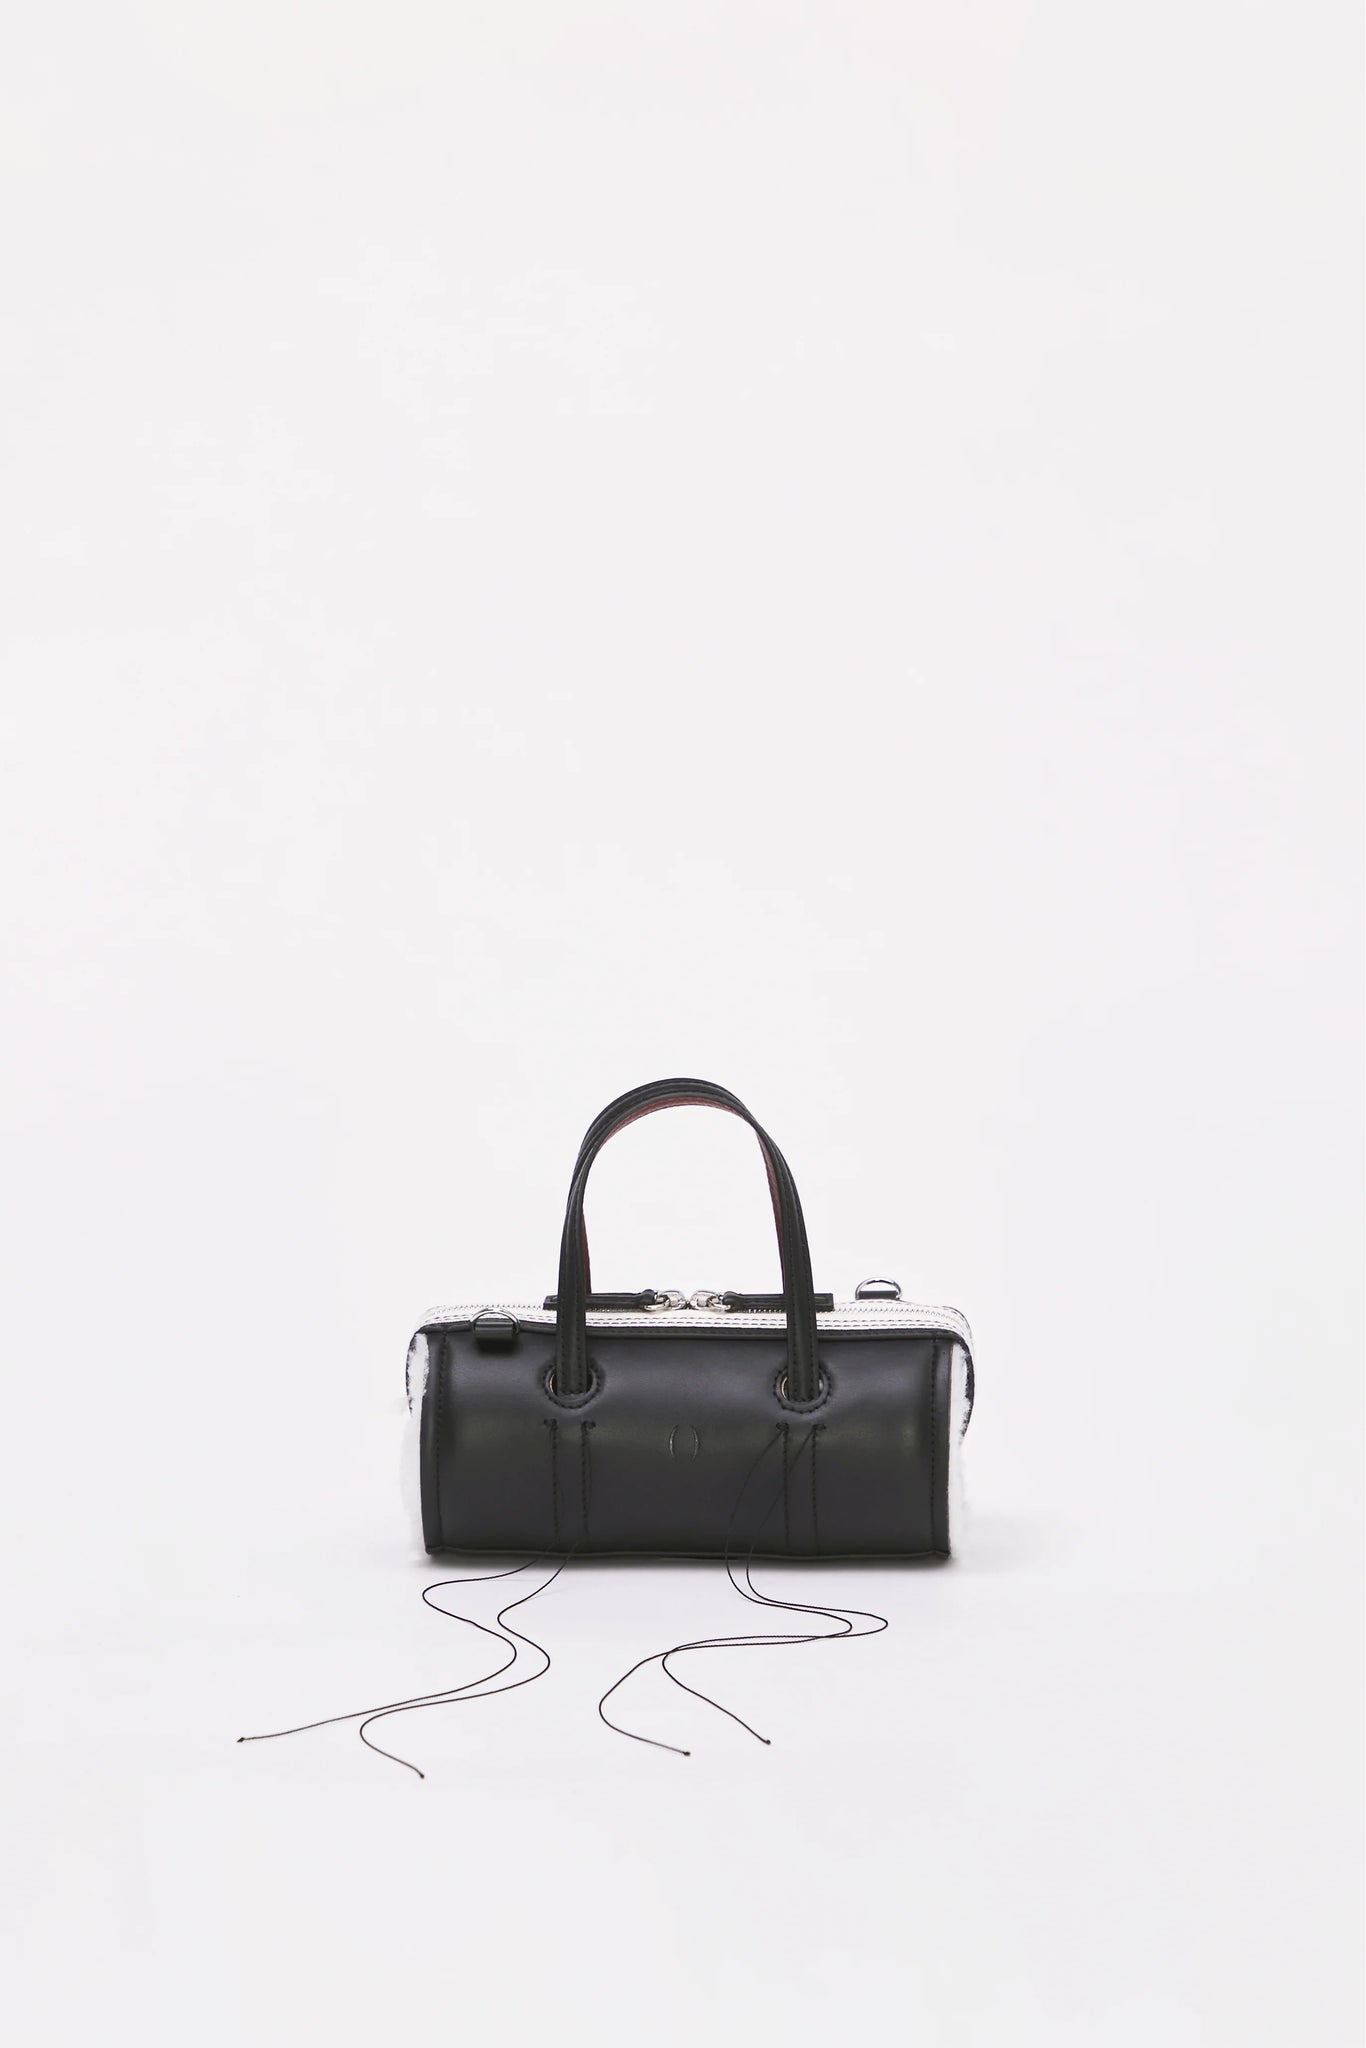 Anona Black Mini Bag